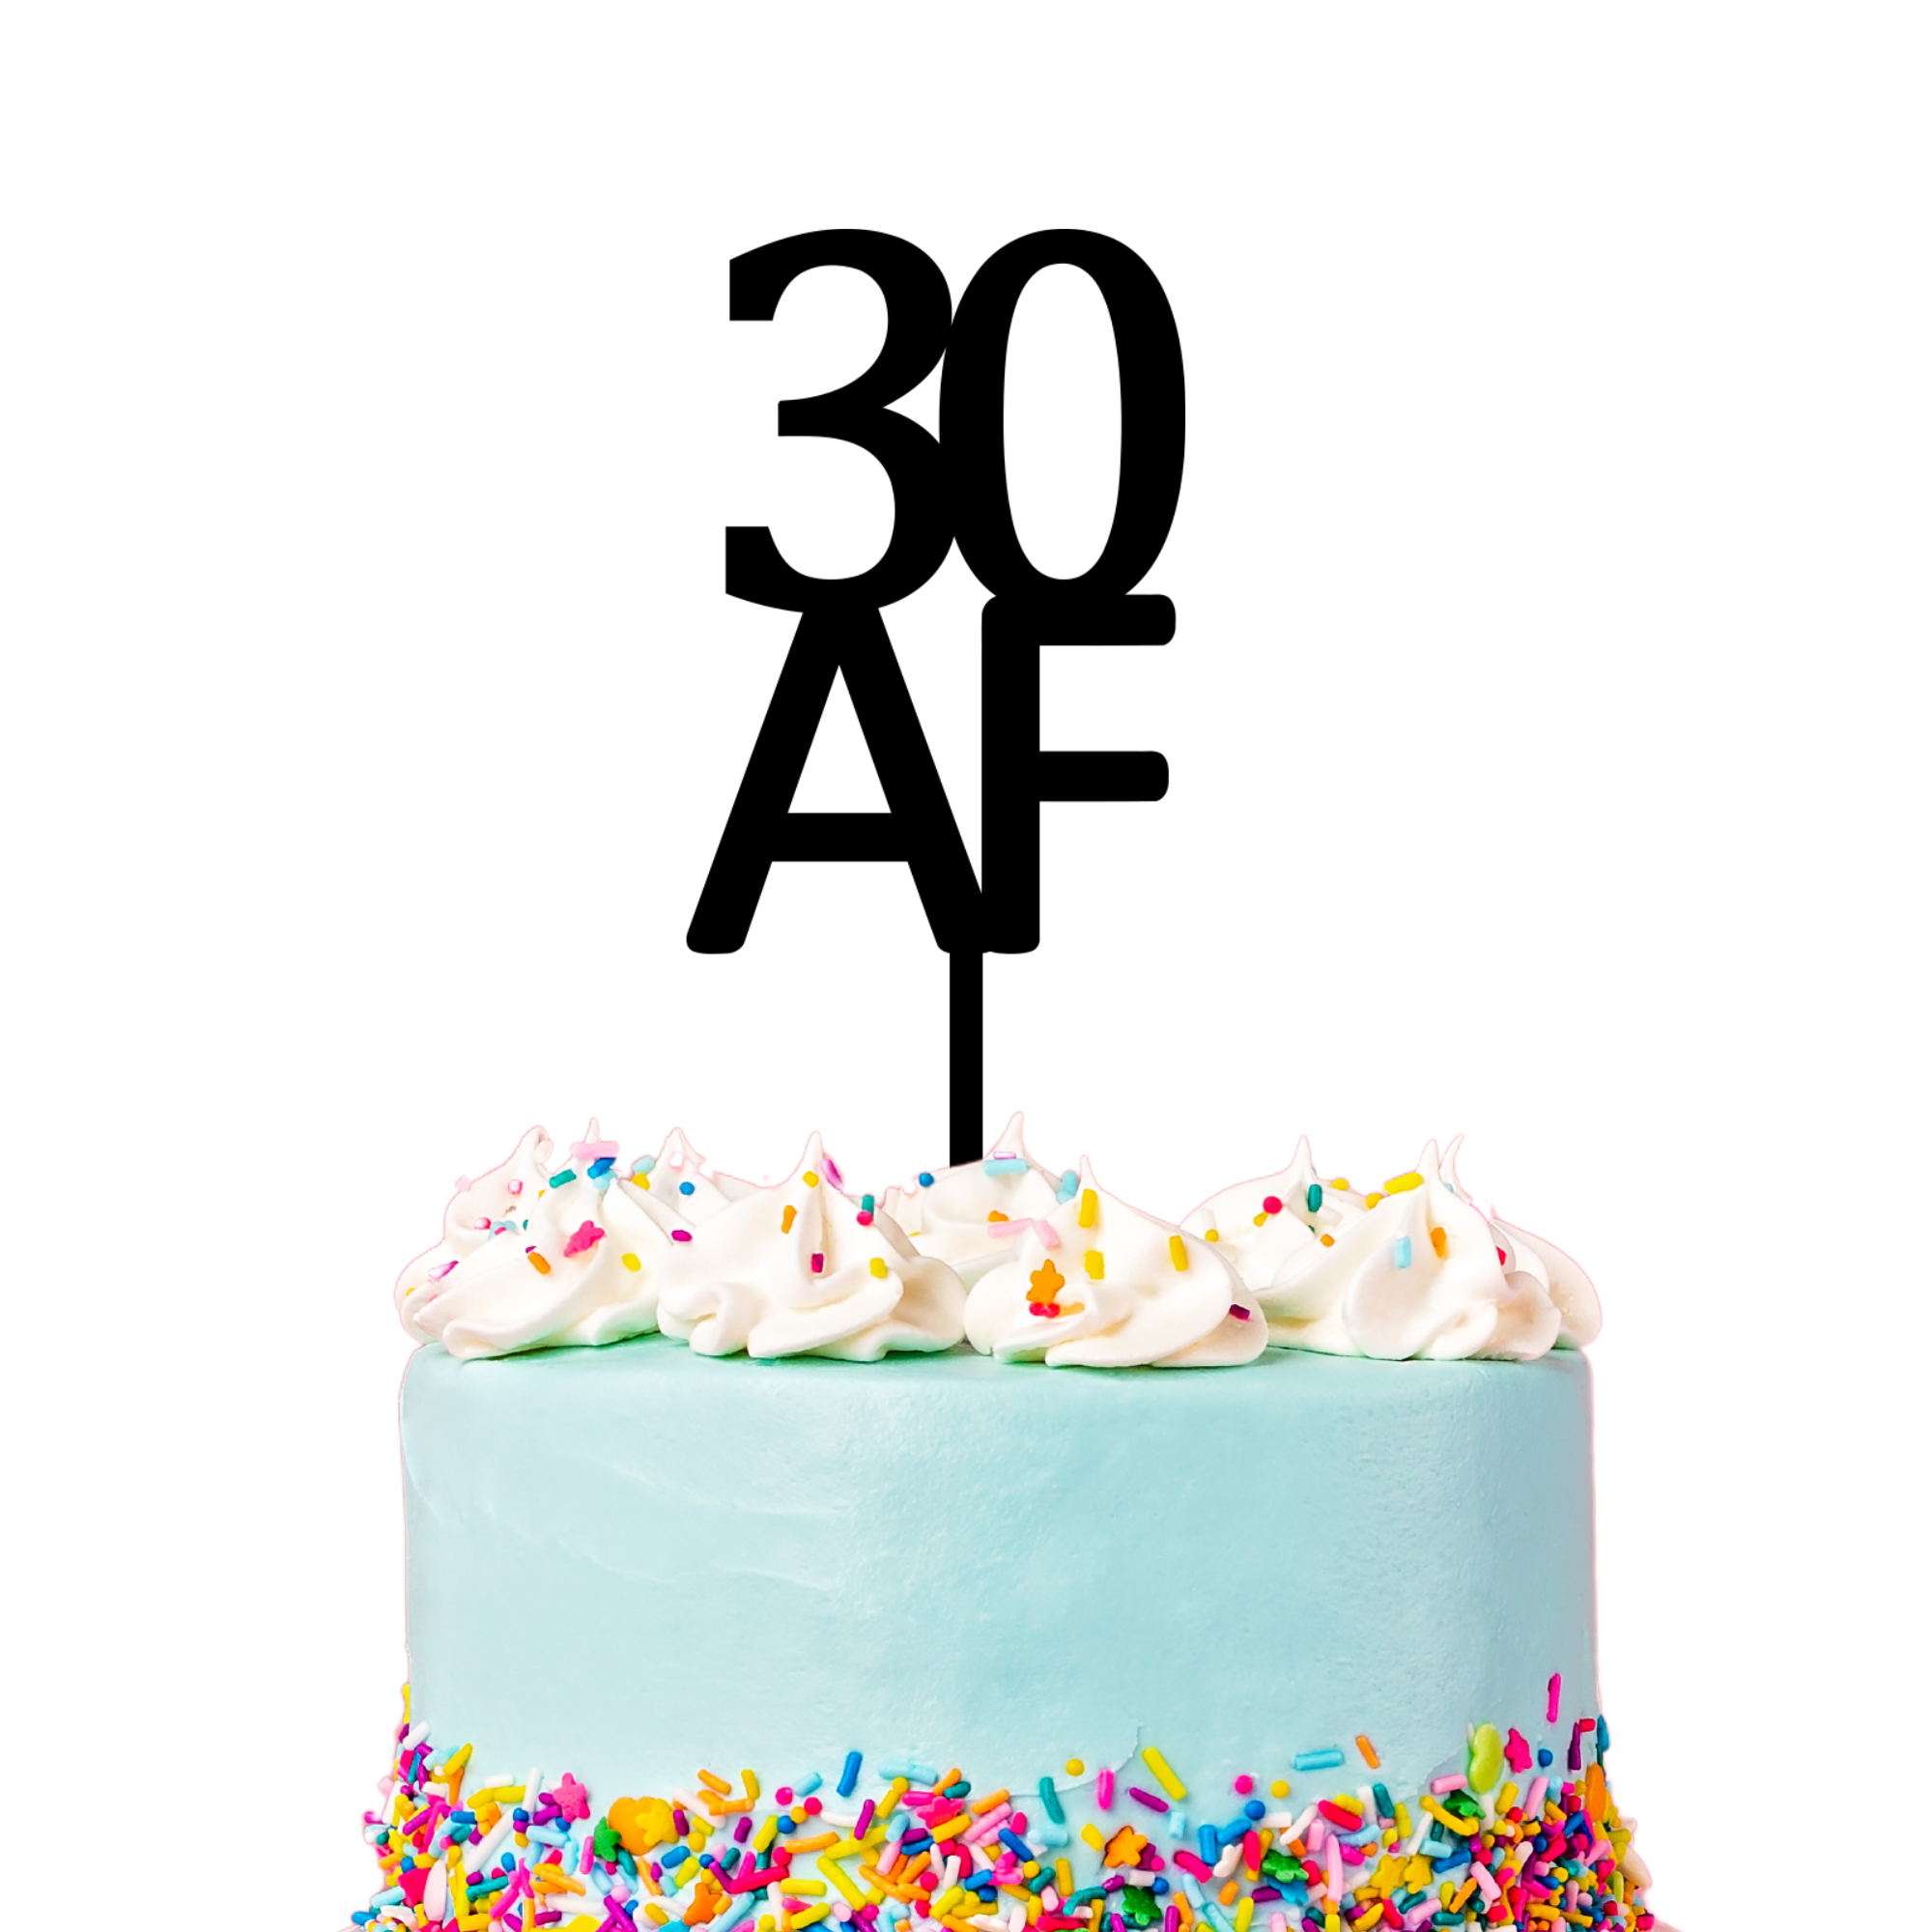 30 AF CAKE TOPPER